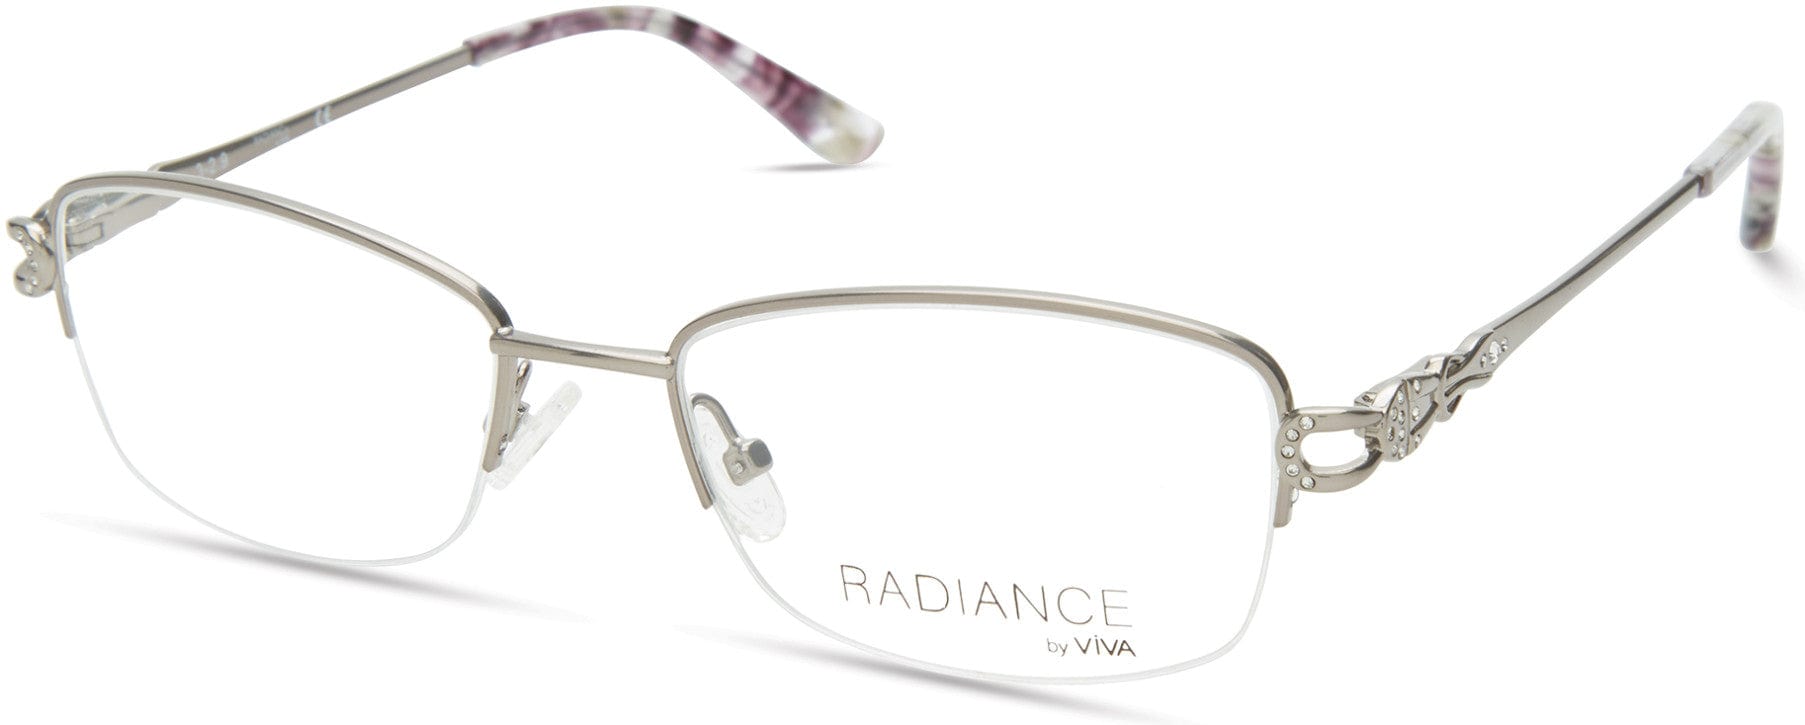 Viva VV8009 Geometric Eyeglasses 010-010 - Shiny Light Nickeltin